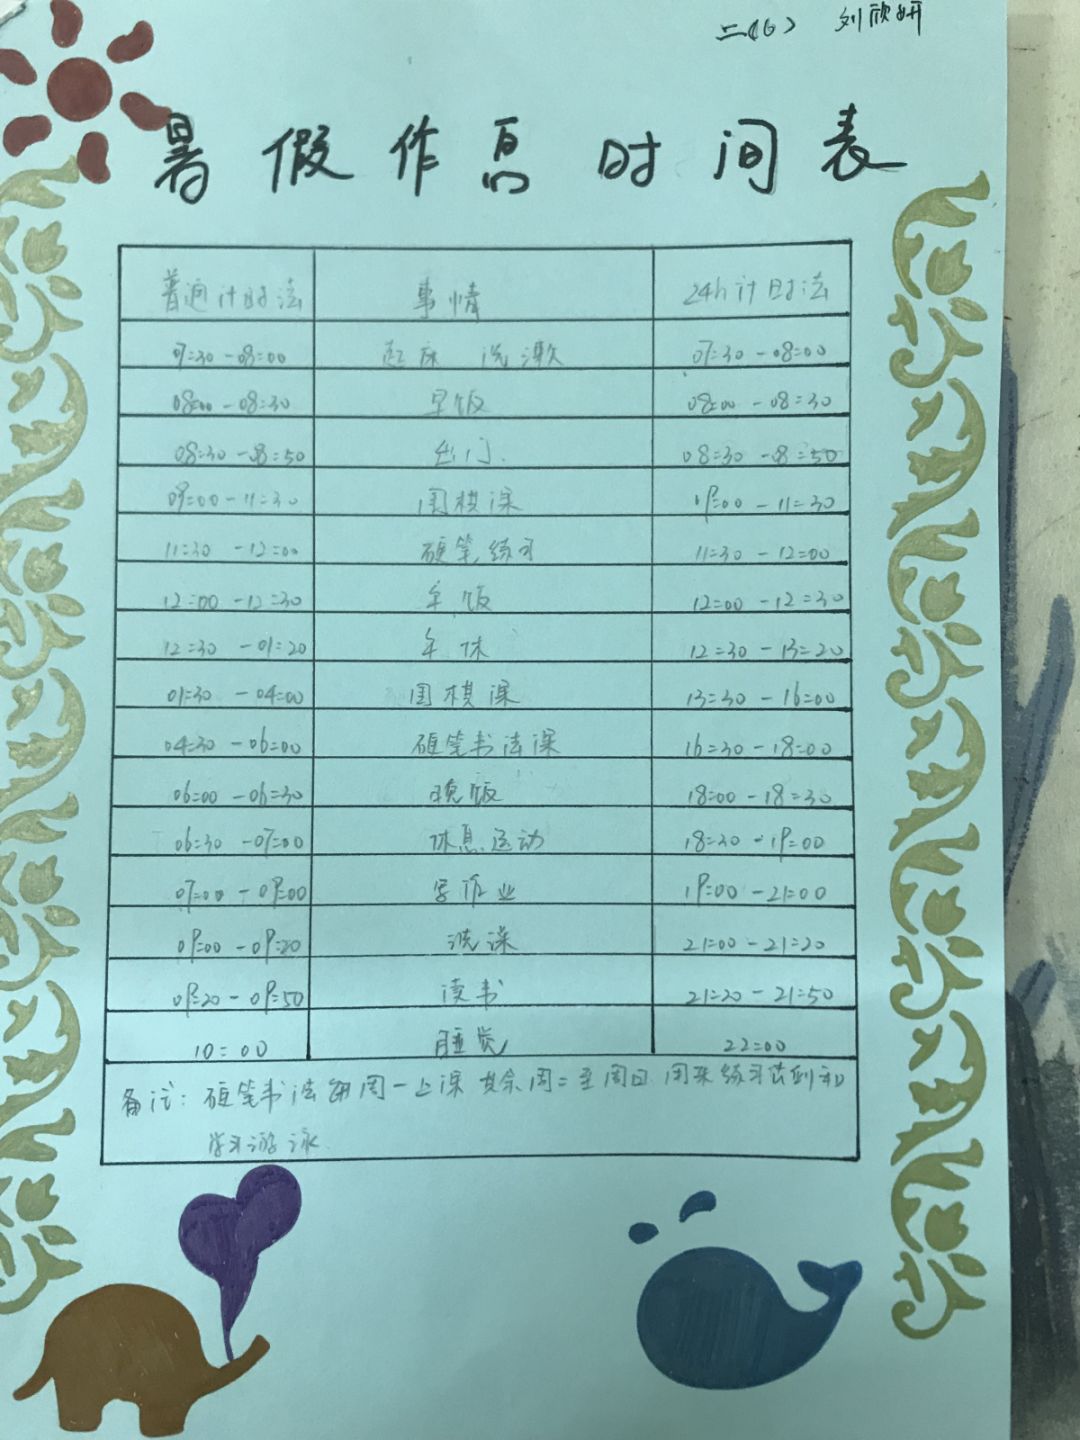 有的同学用普通计时法和24小时计时法,制订了一张暑假作息时间表